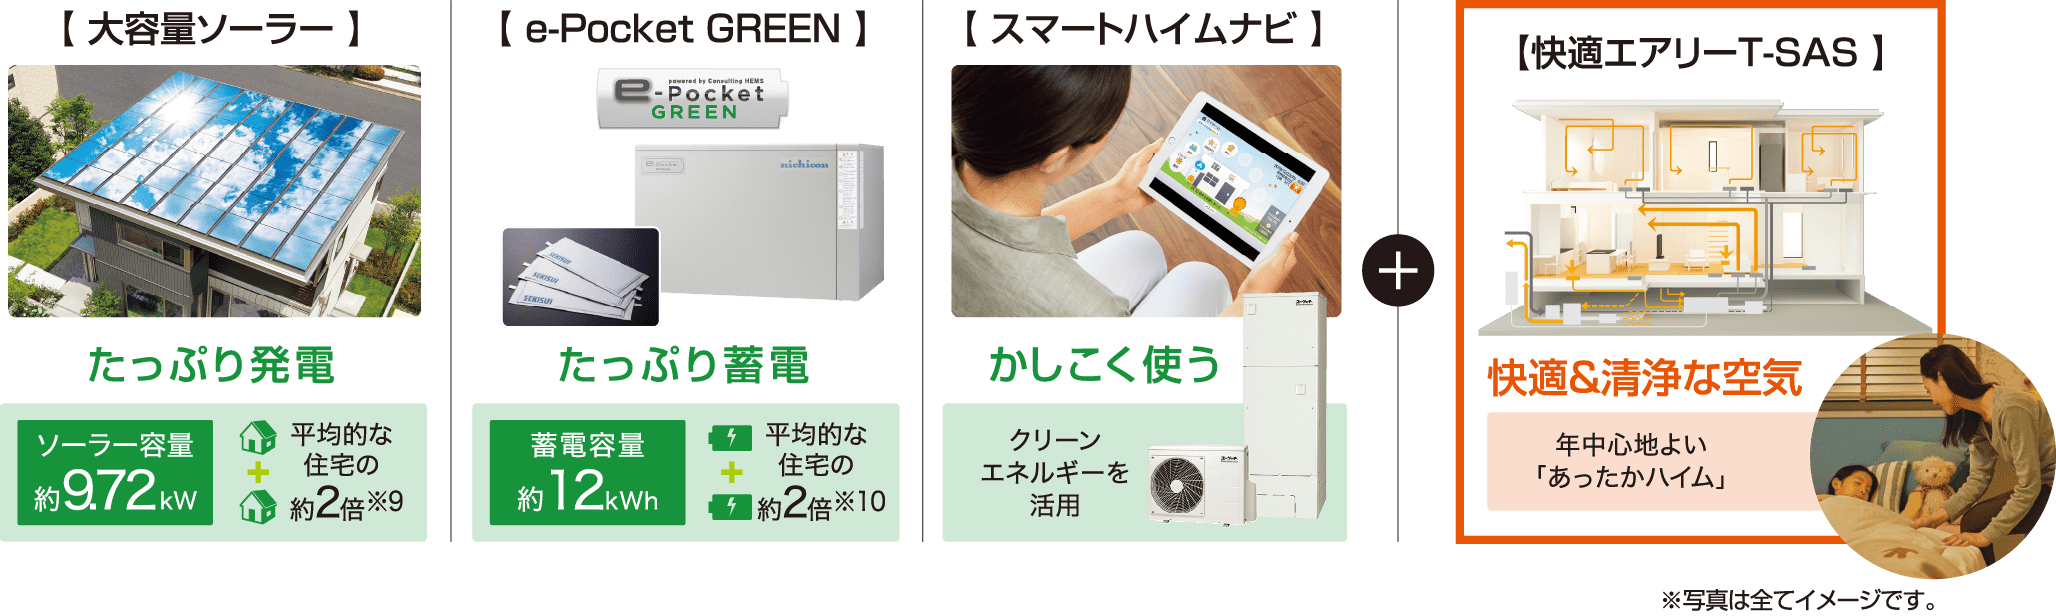 【 大容量ソーラー 】【 e-Pocket GREEN 】【 スマートハイムナビ 】【快適エアリーT-SAS 】